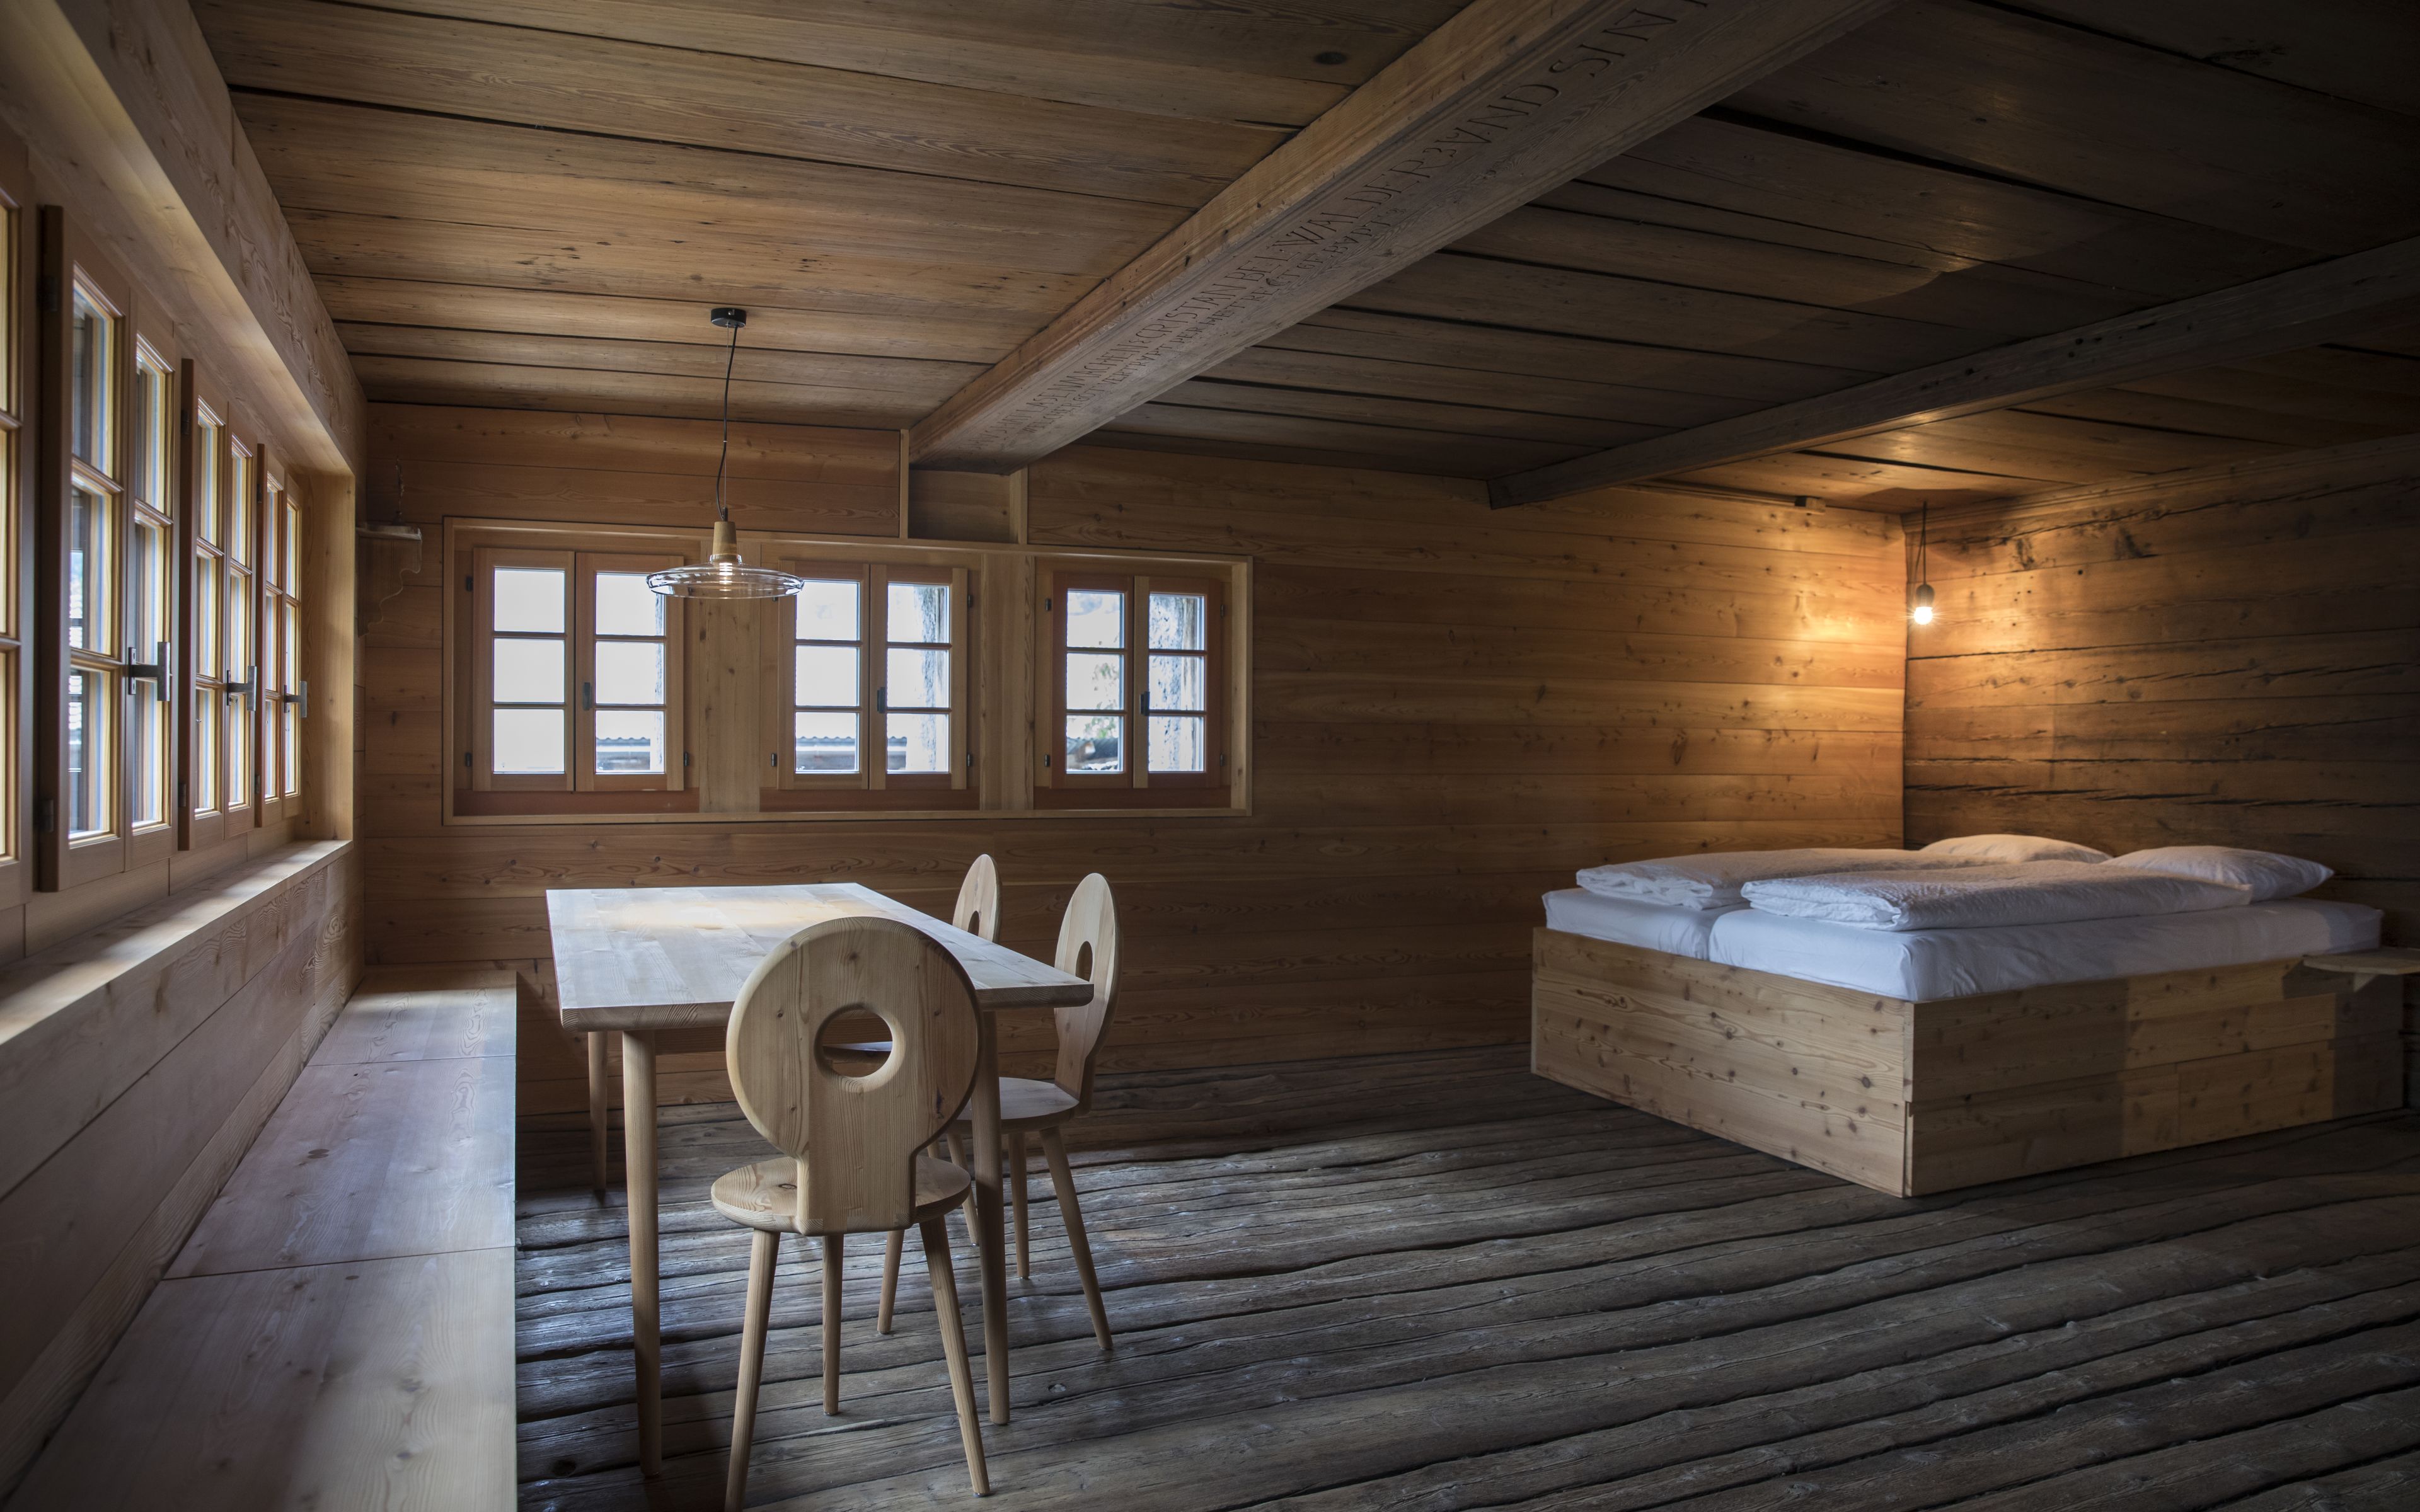 Renoviertes Chalet mit Bett, Stühlen und Holztisch Walliser Möbel Valais Wallis Schweiz Switzerland Suisse